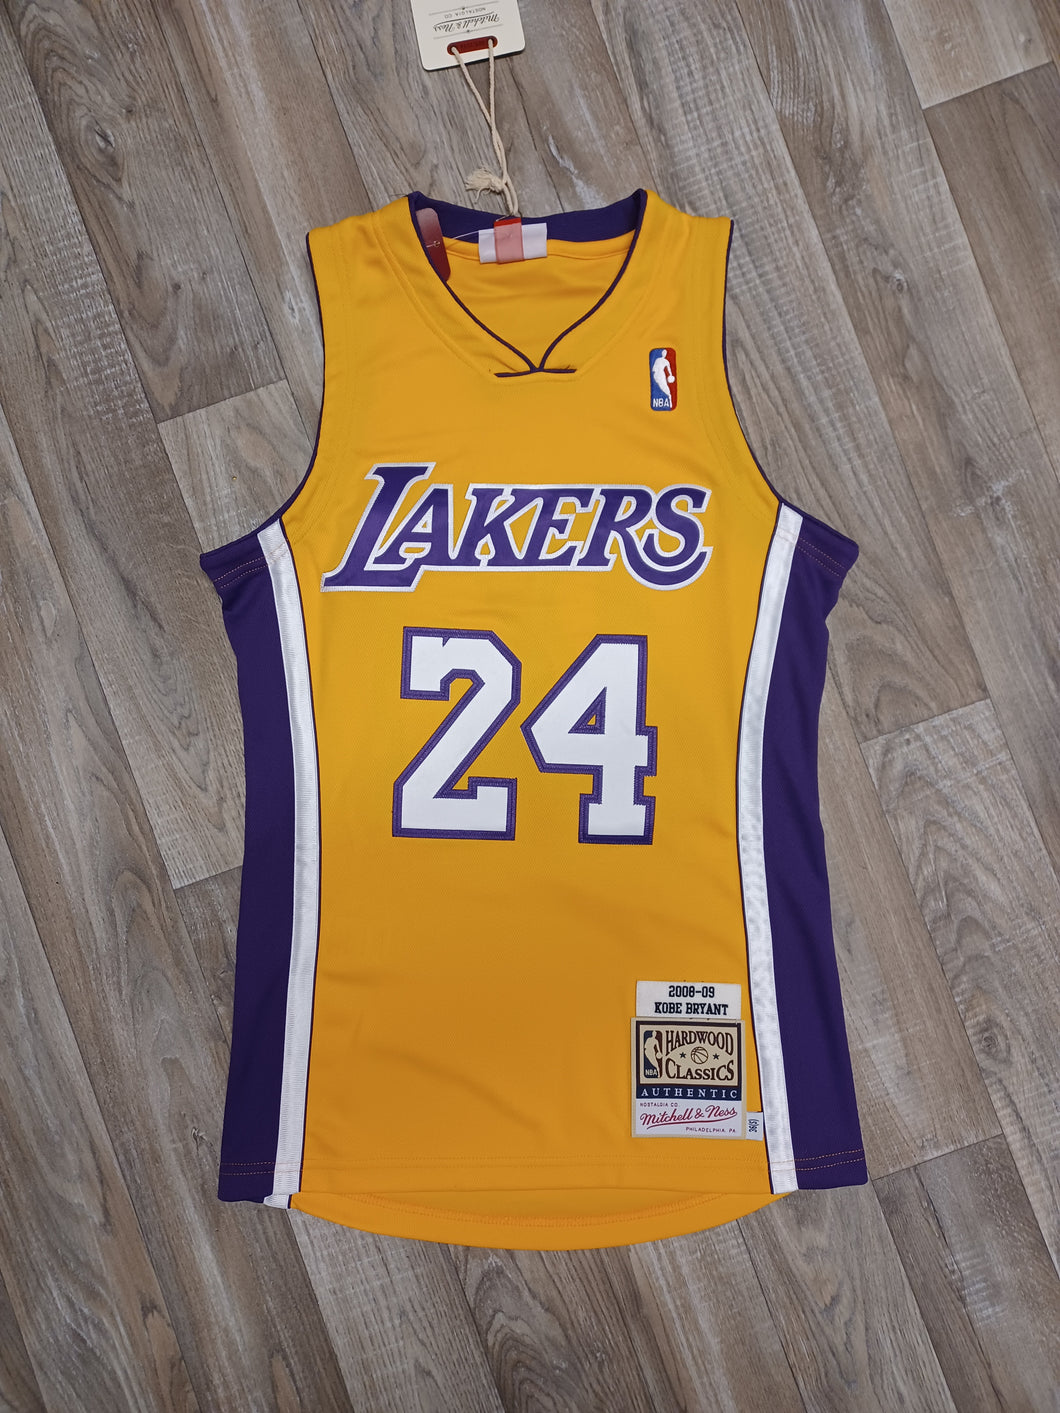 100% Authentic Kobe Bryant Mitchell & Ness NBA Lakers Blue Jersey Size 48  XL